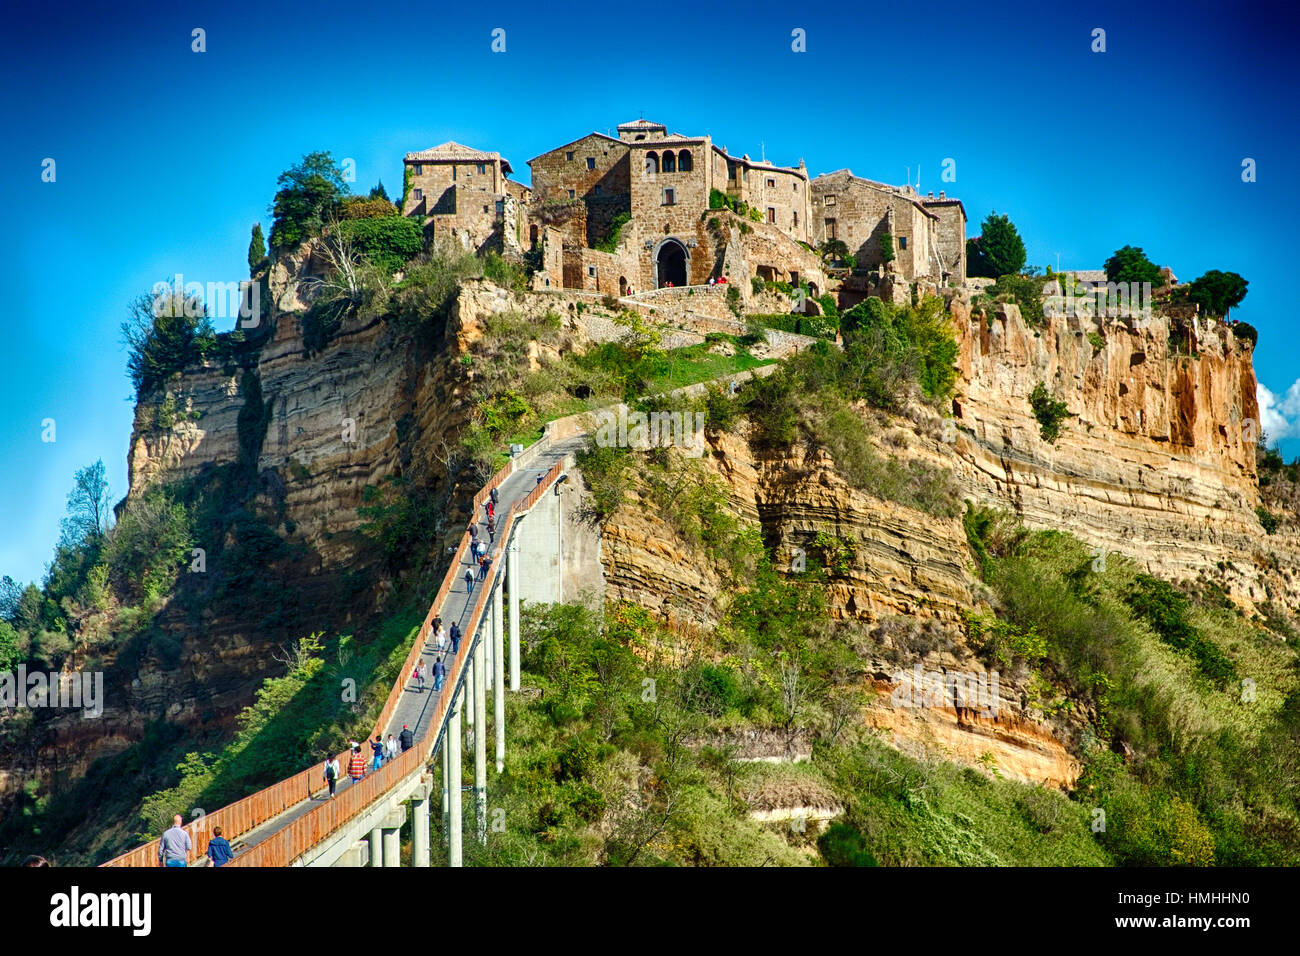 Basso Angolo di visione di un'n'antica cittadina collinare, Civita di Bagnoregio, Umbria, Italia Foto Stock